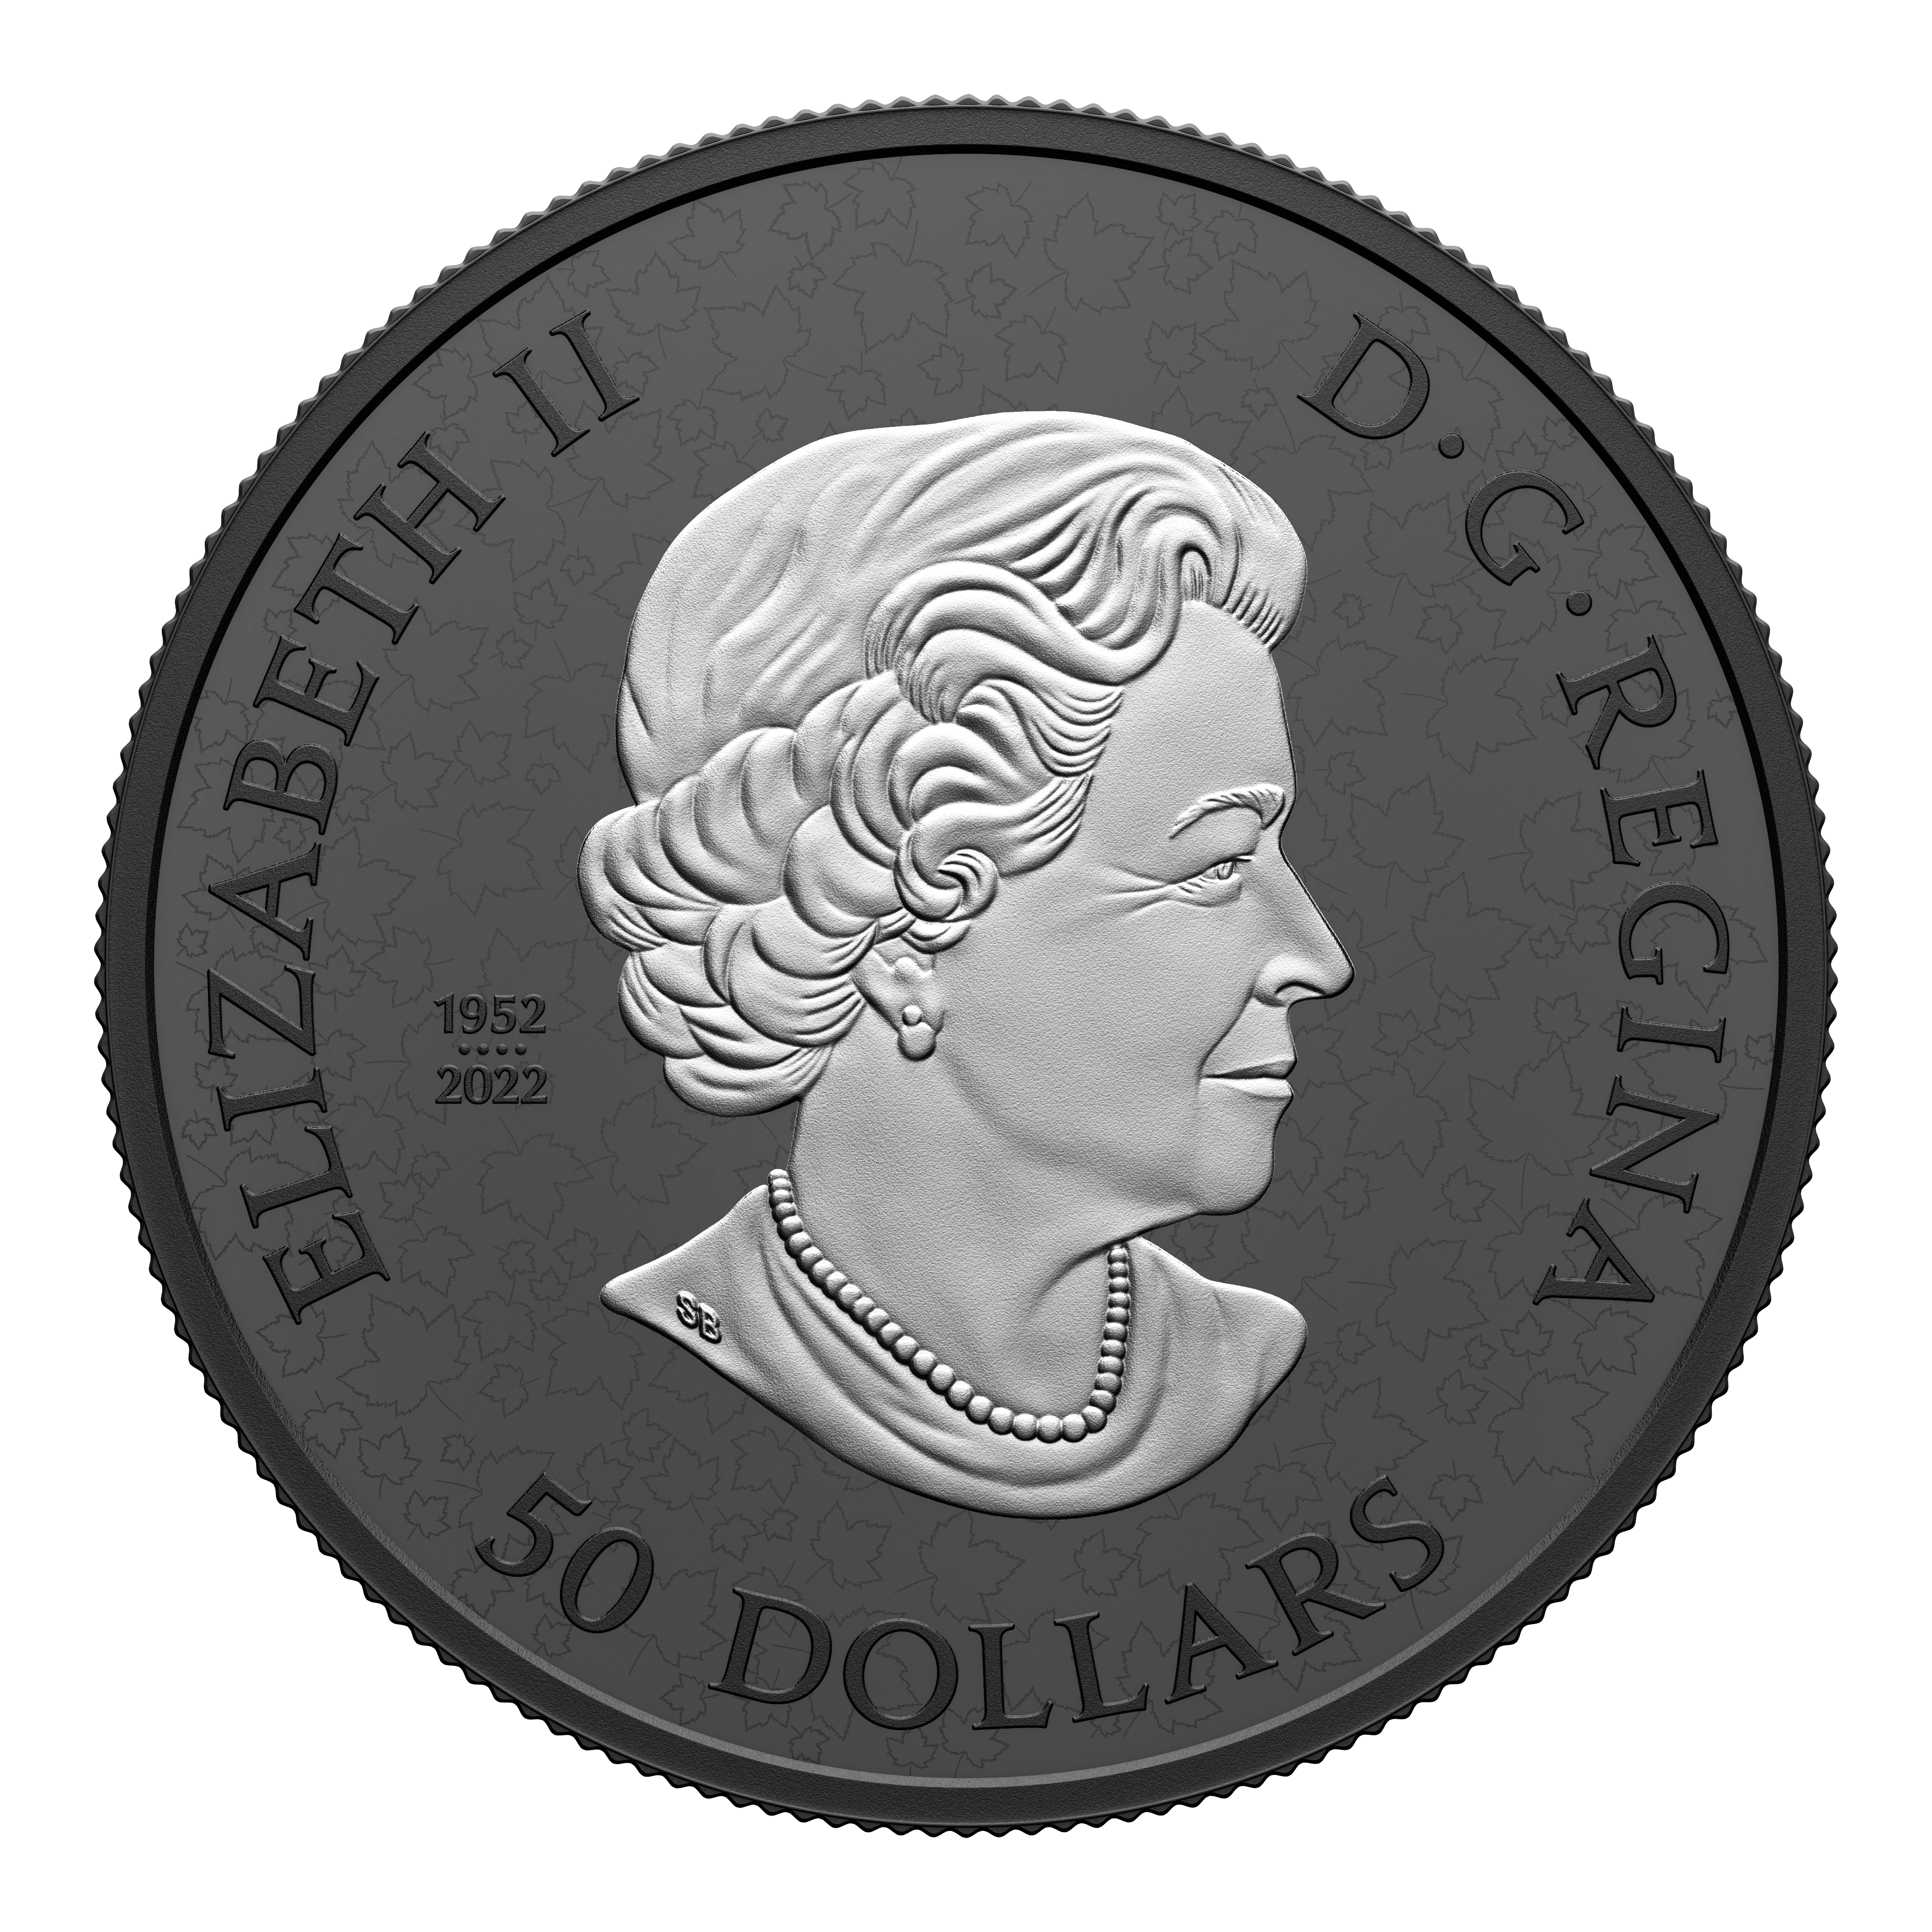 MAPLE LEAF Black Rhodium Plating 5 Oz Silver Coin $50 Canada 2024